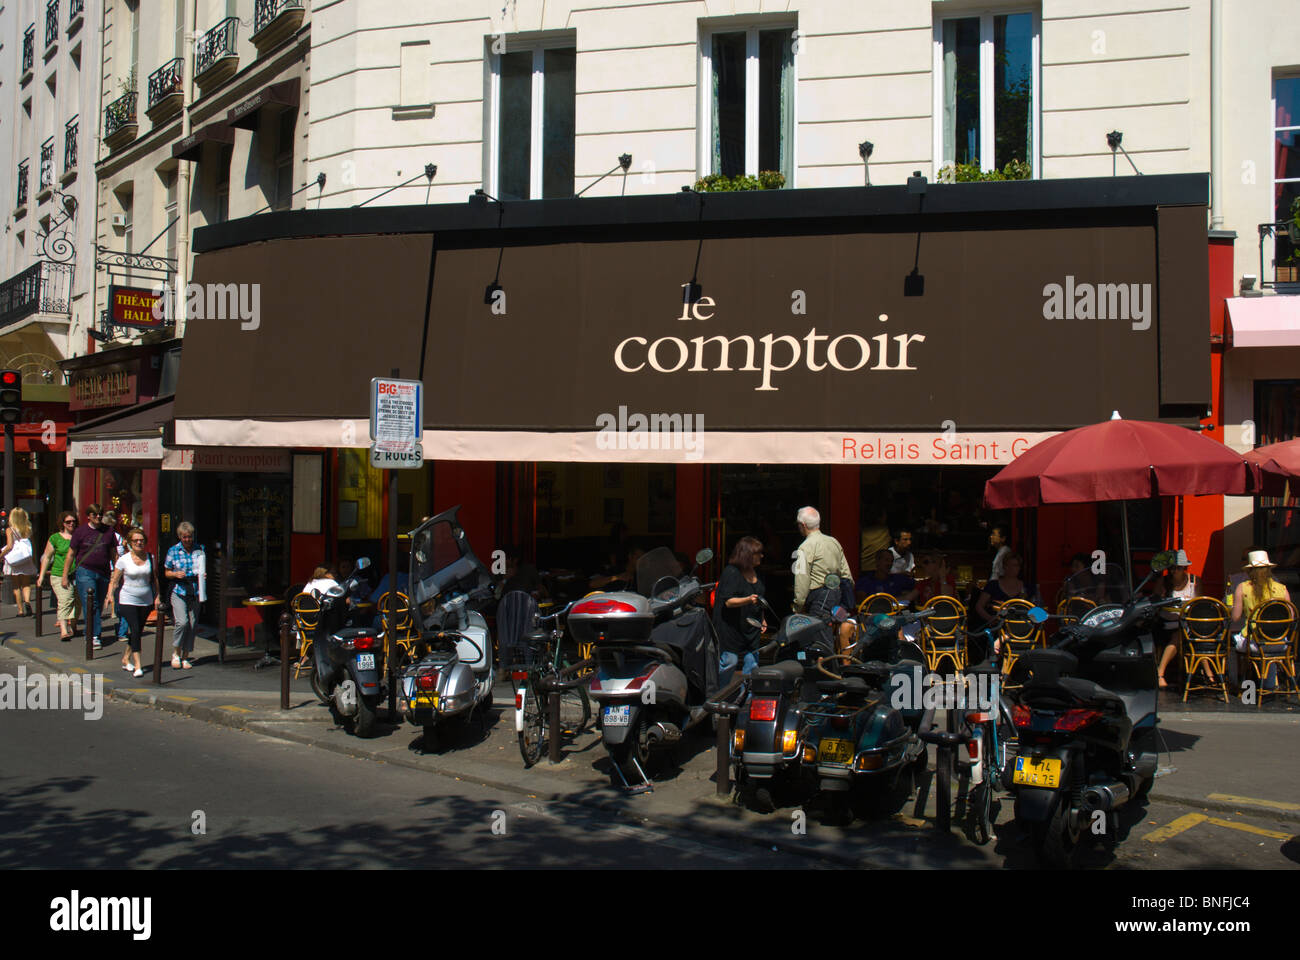 Le Comptoir cafe restaurant bistro exterior St-Germain-des-Pres Paris France Europe Stock Photo